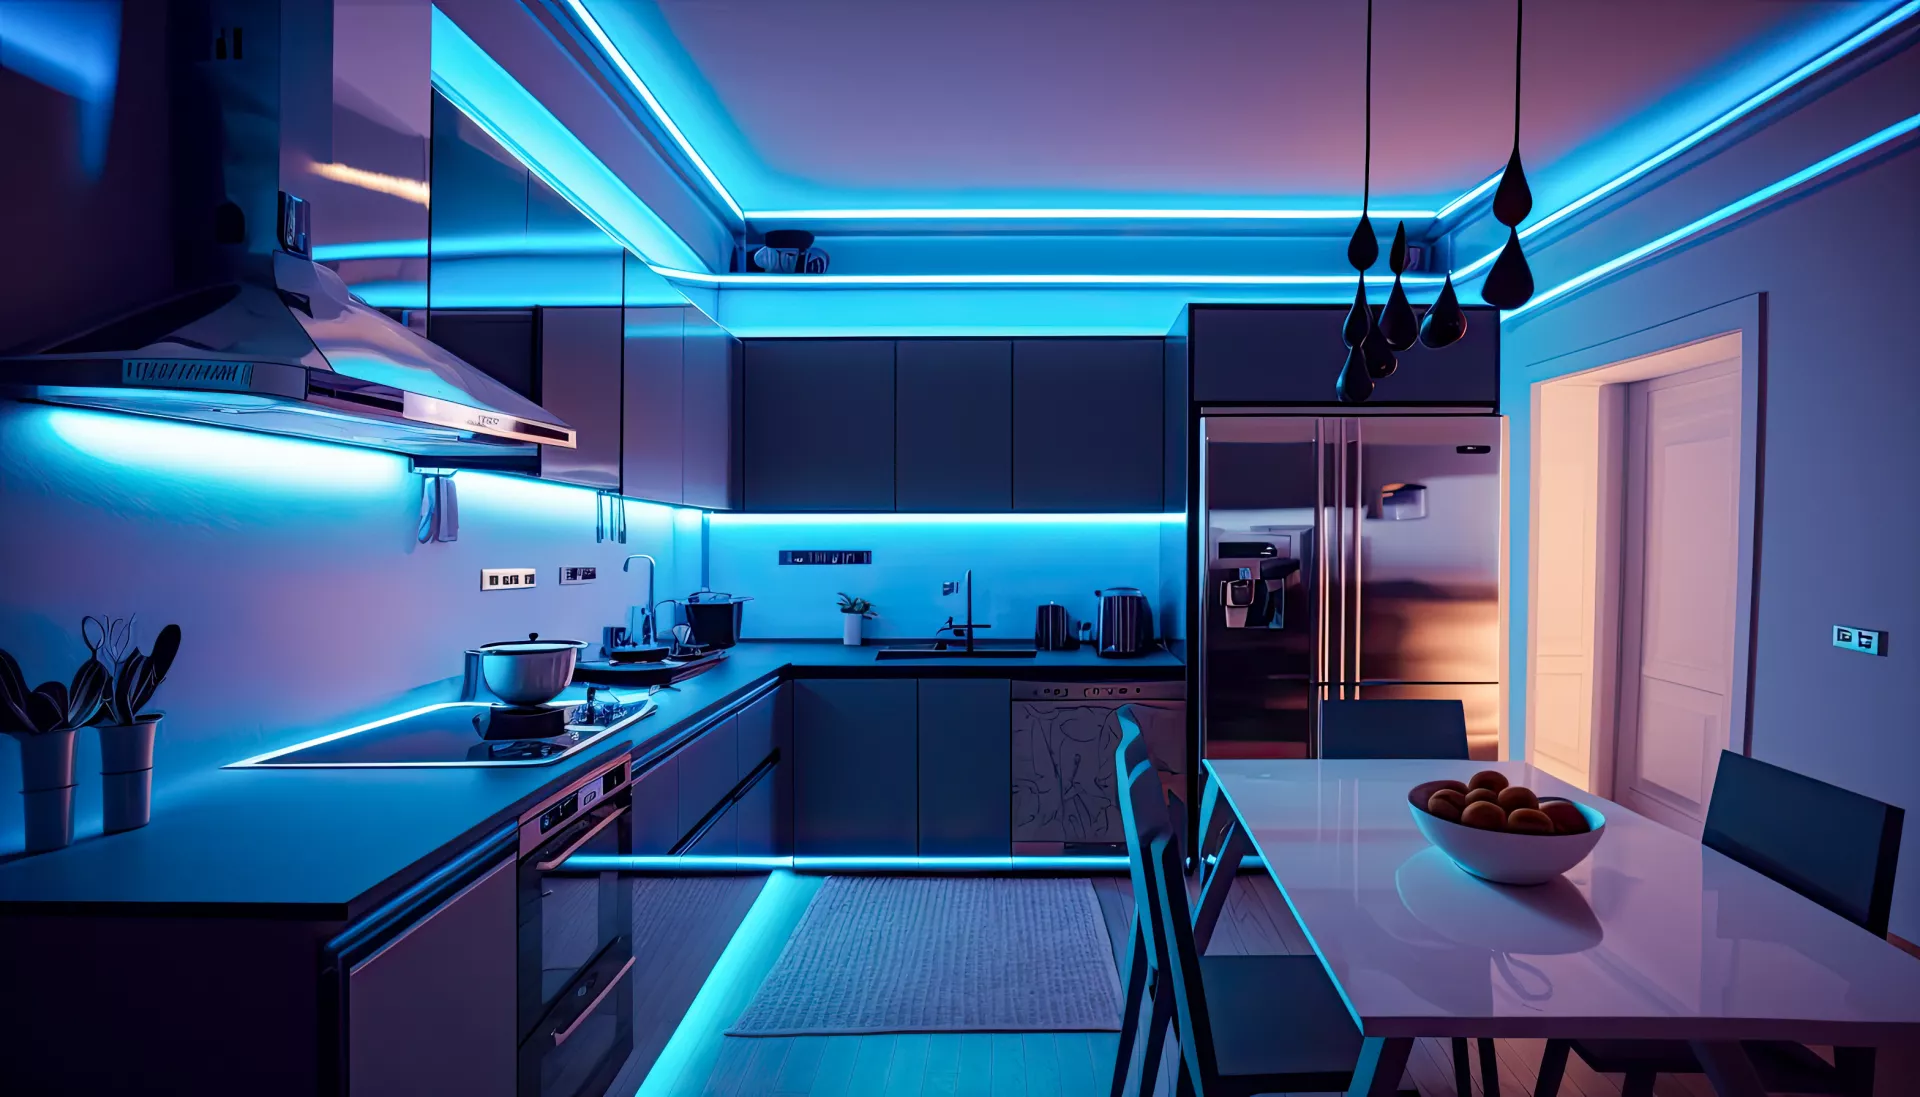 Kitchen light LED